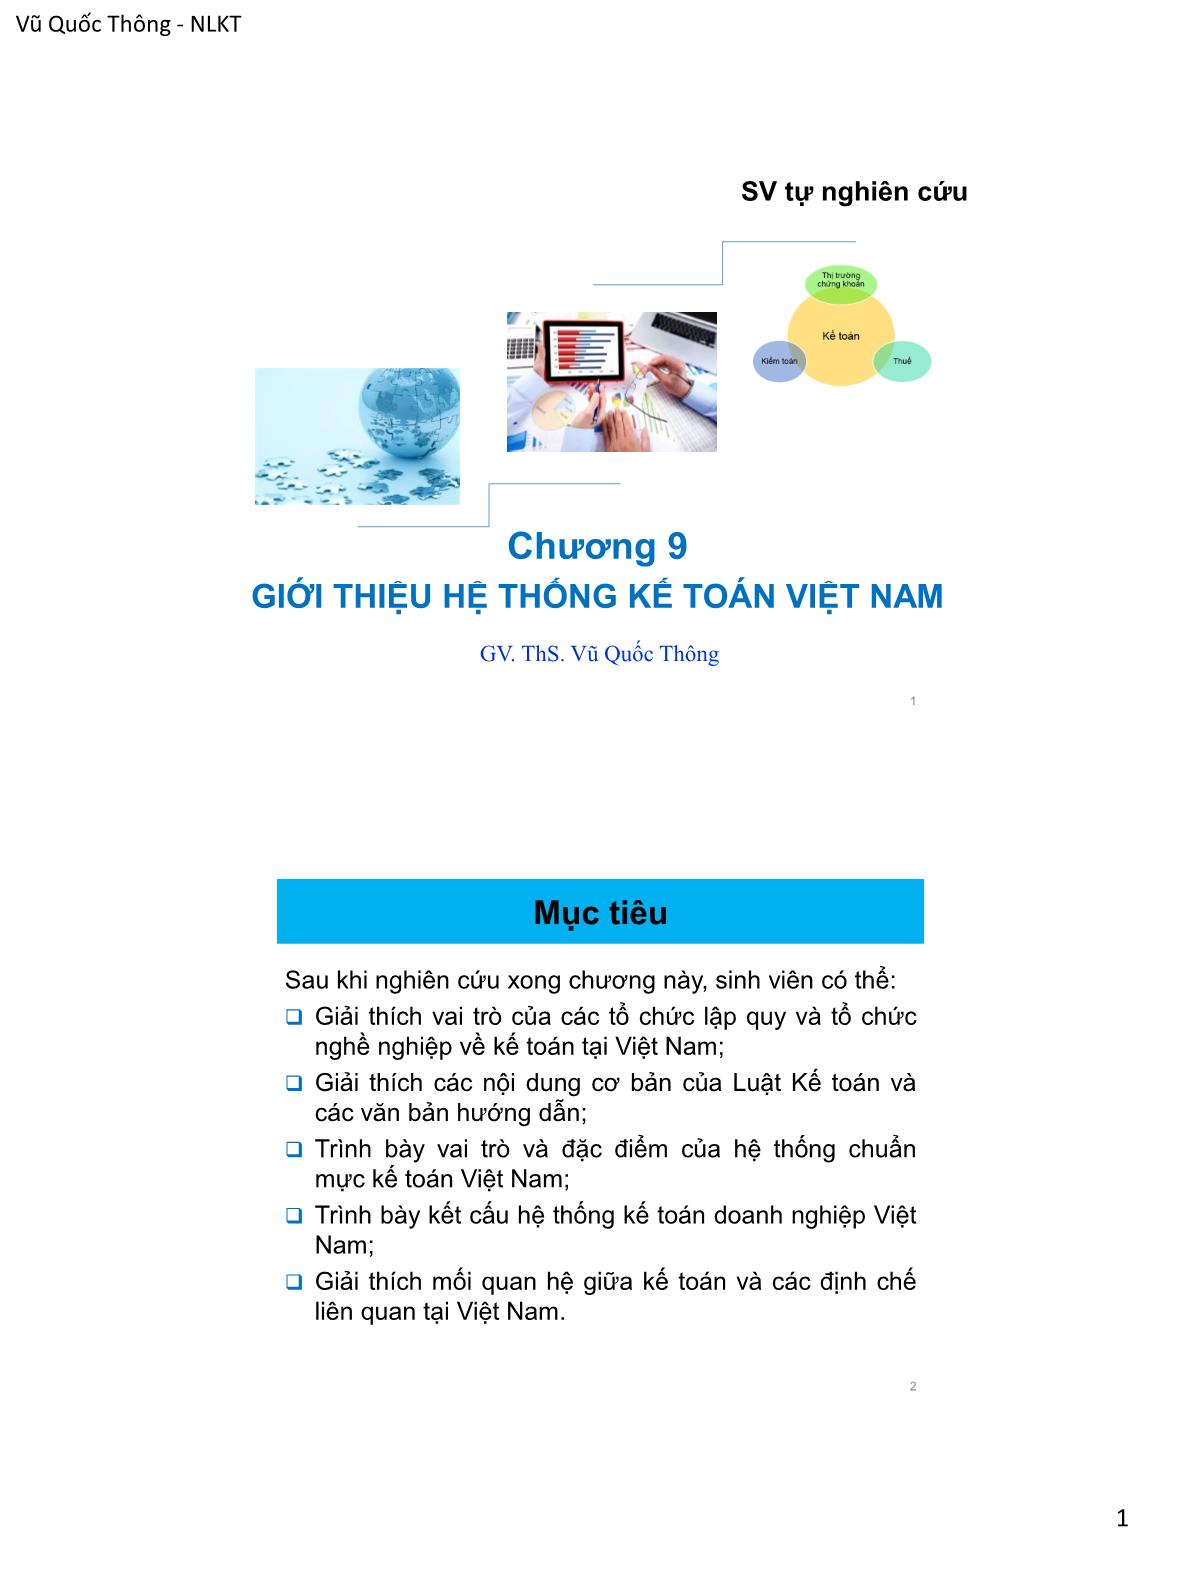 Bài giảng Nguyên lý kế toán - Chương 9: Giới thiệu hệ thống kế toán Việt Nam - Vũ Quốc Thông trang 1